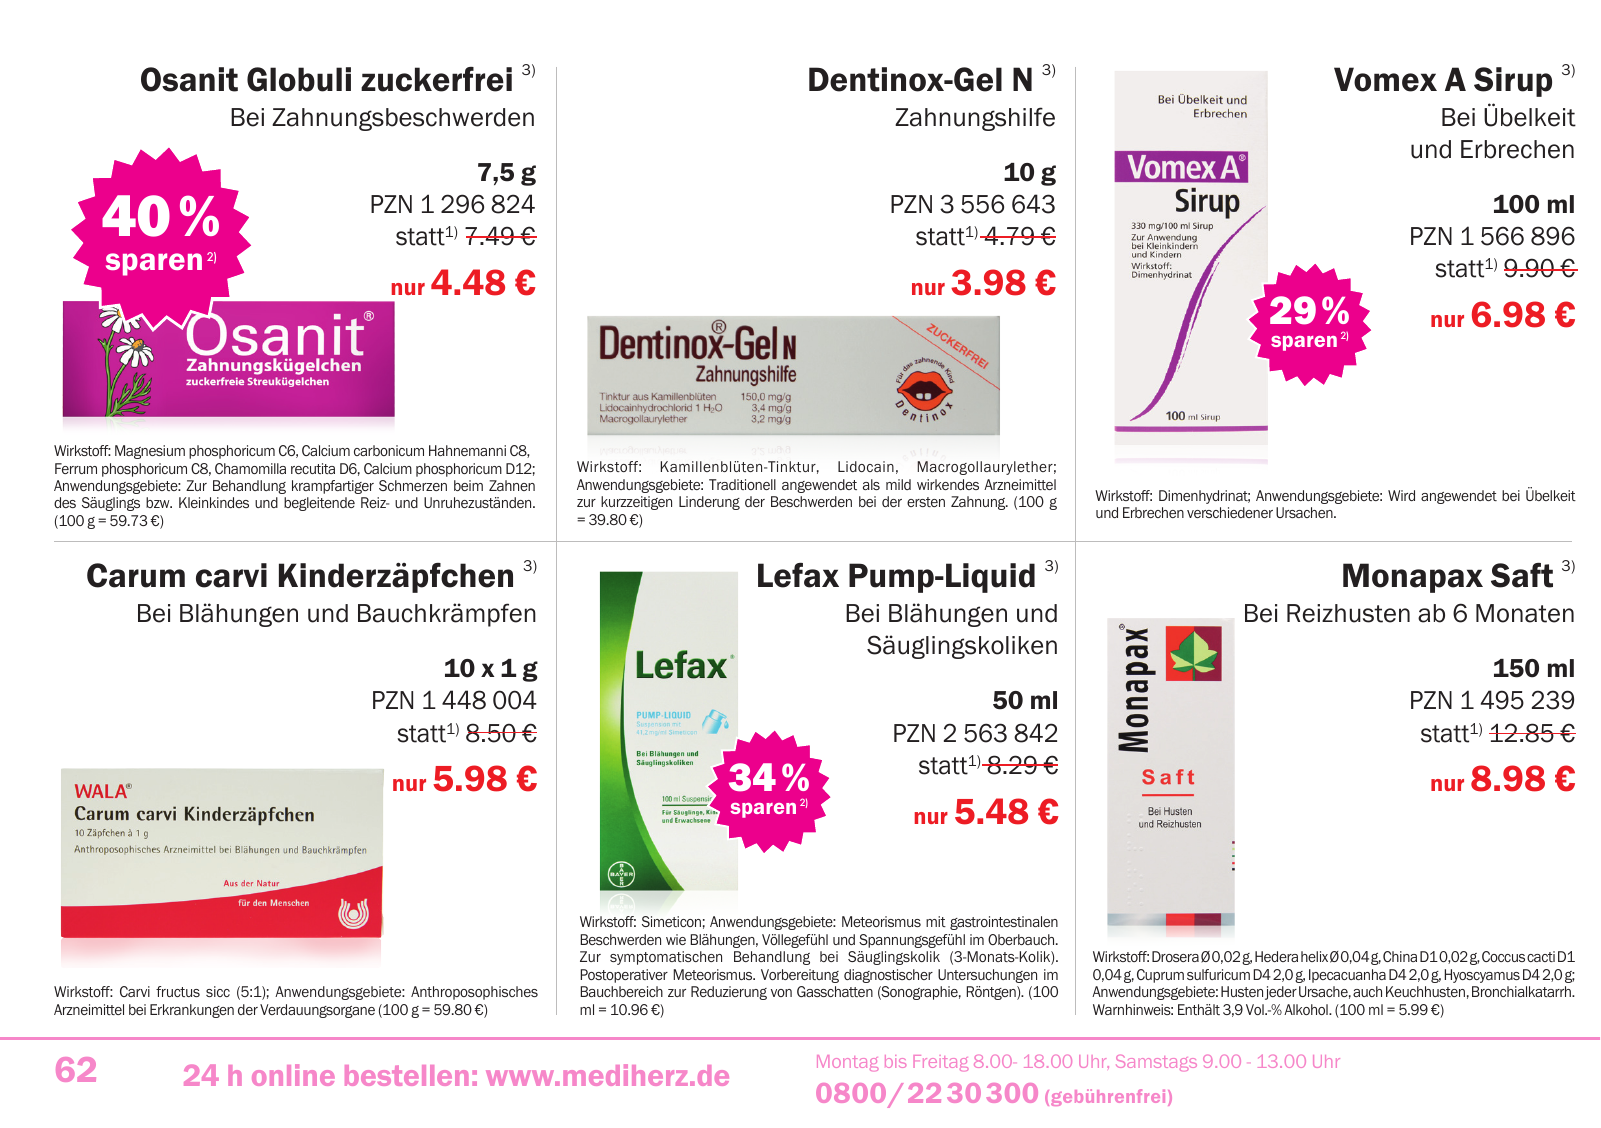 Vorschau Mediherz Katalog Herbst/Winter 2015/16 Seite 62